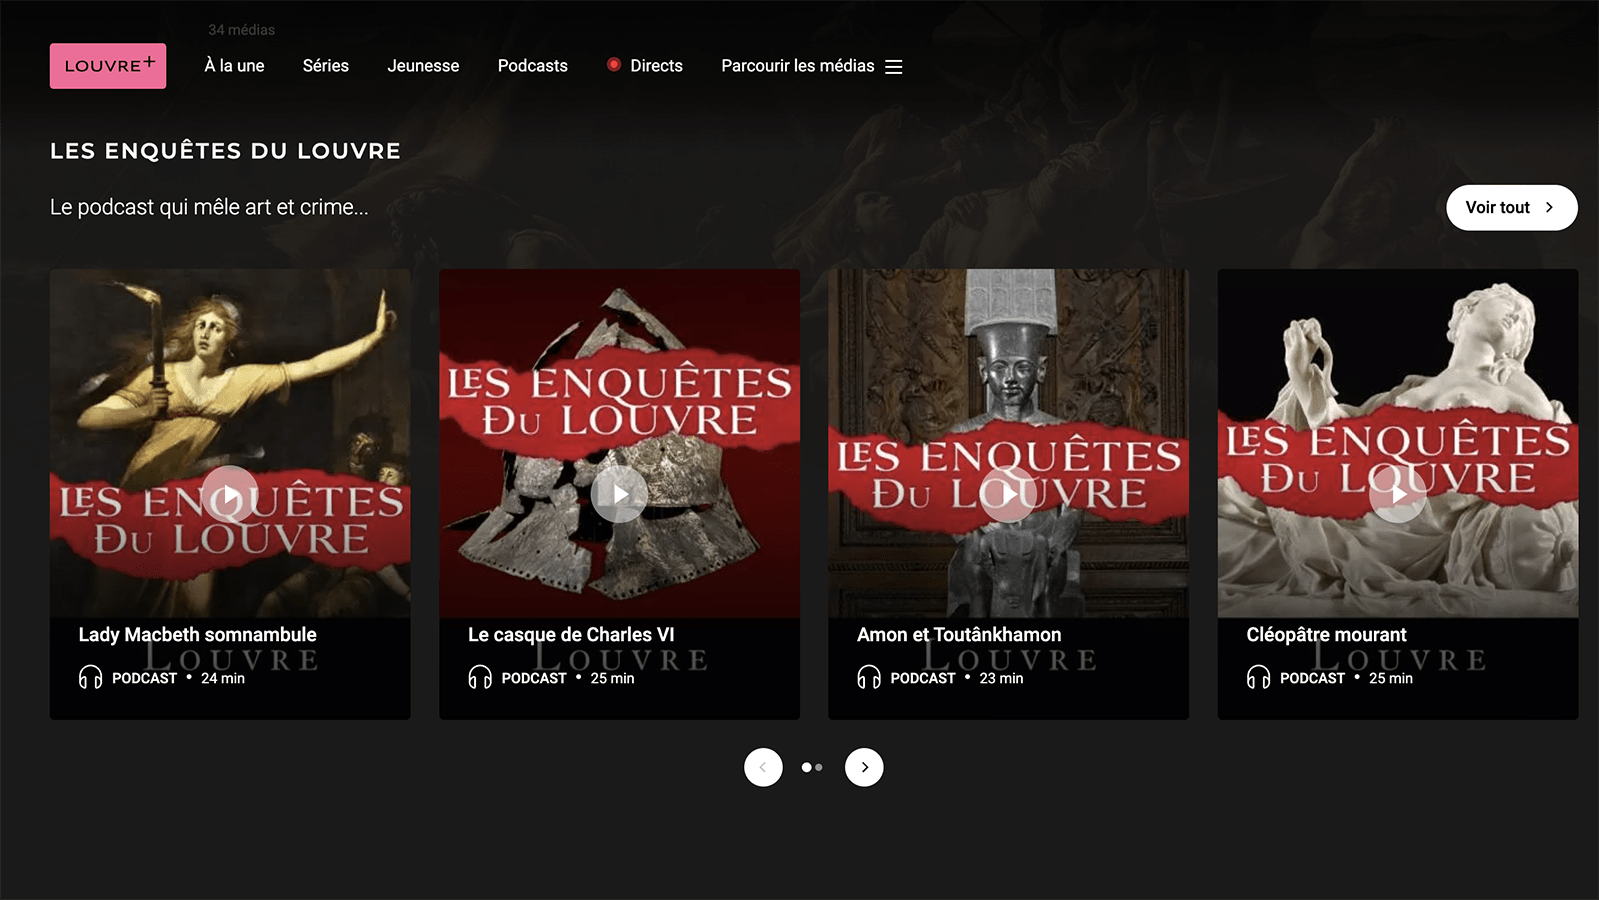 Podcast "Les Enquetes du Louvre"